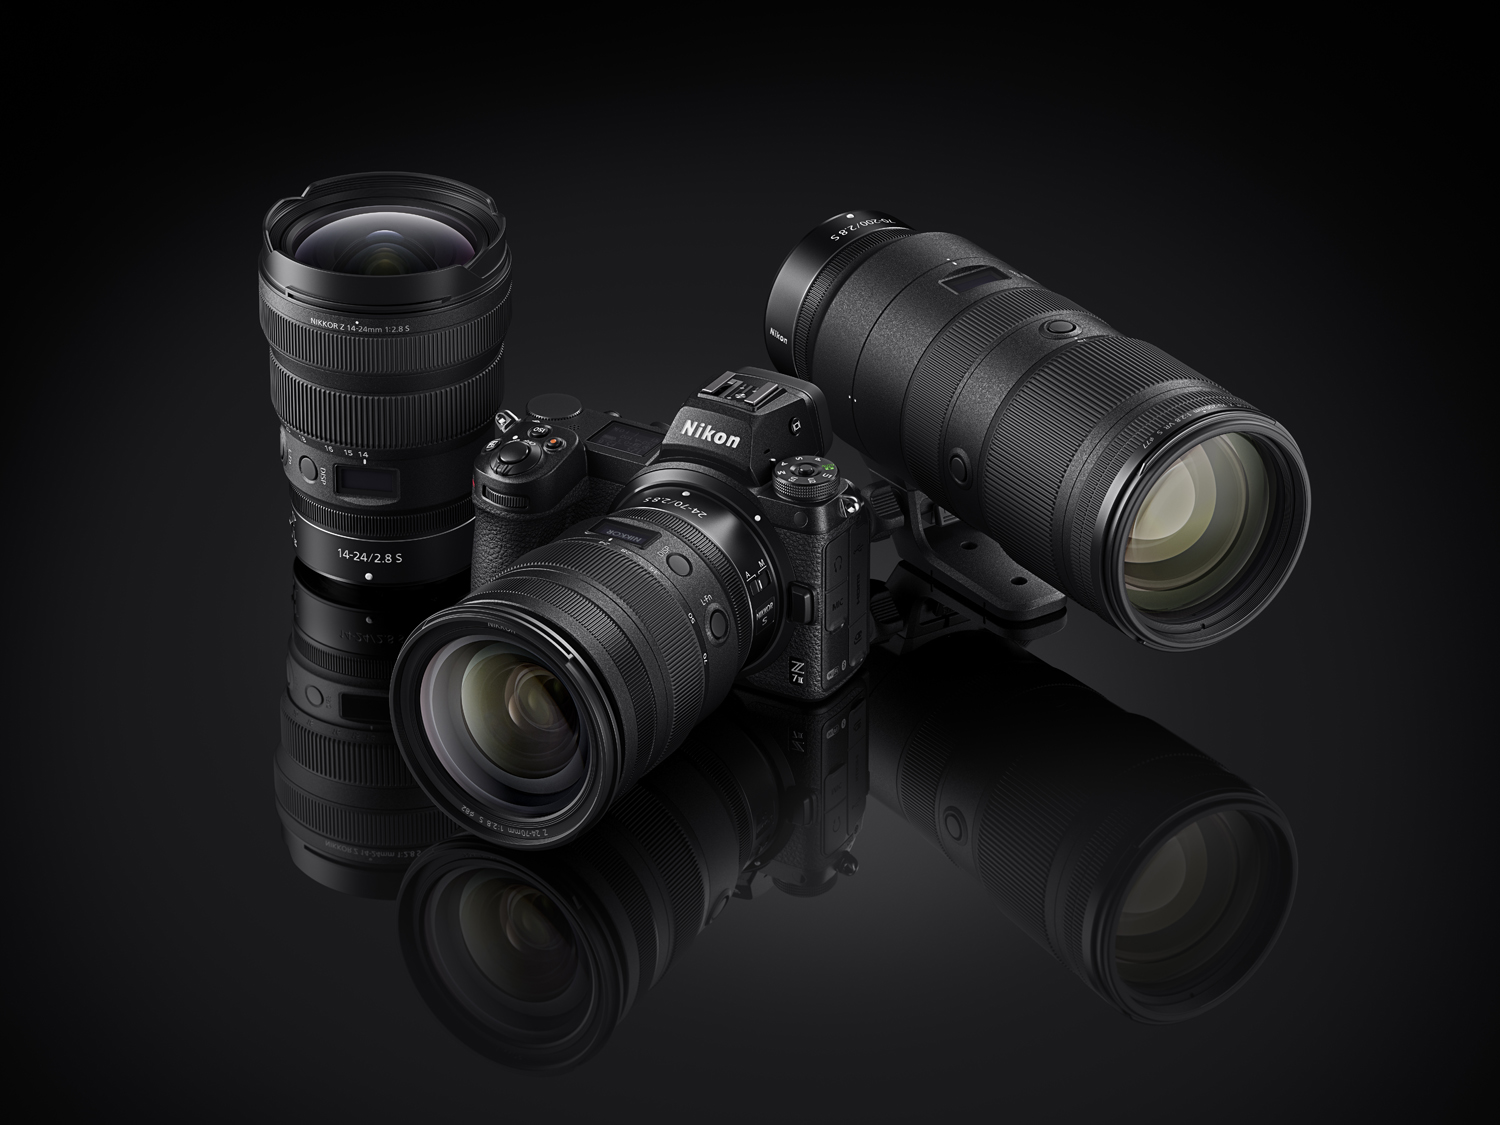 Nikon Z7II a objektivy světelnosti 2.8.